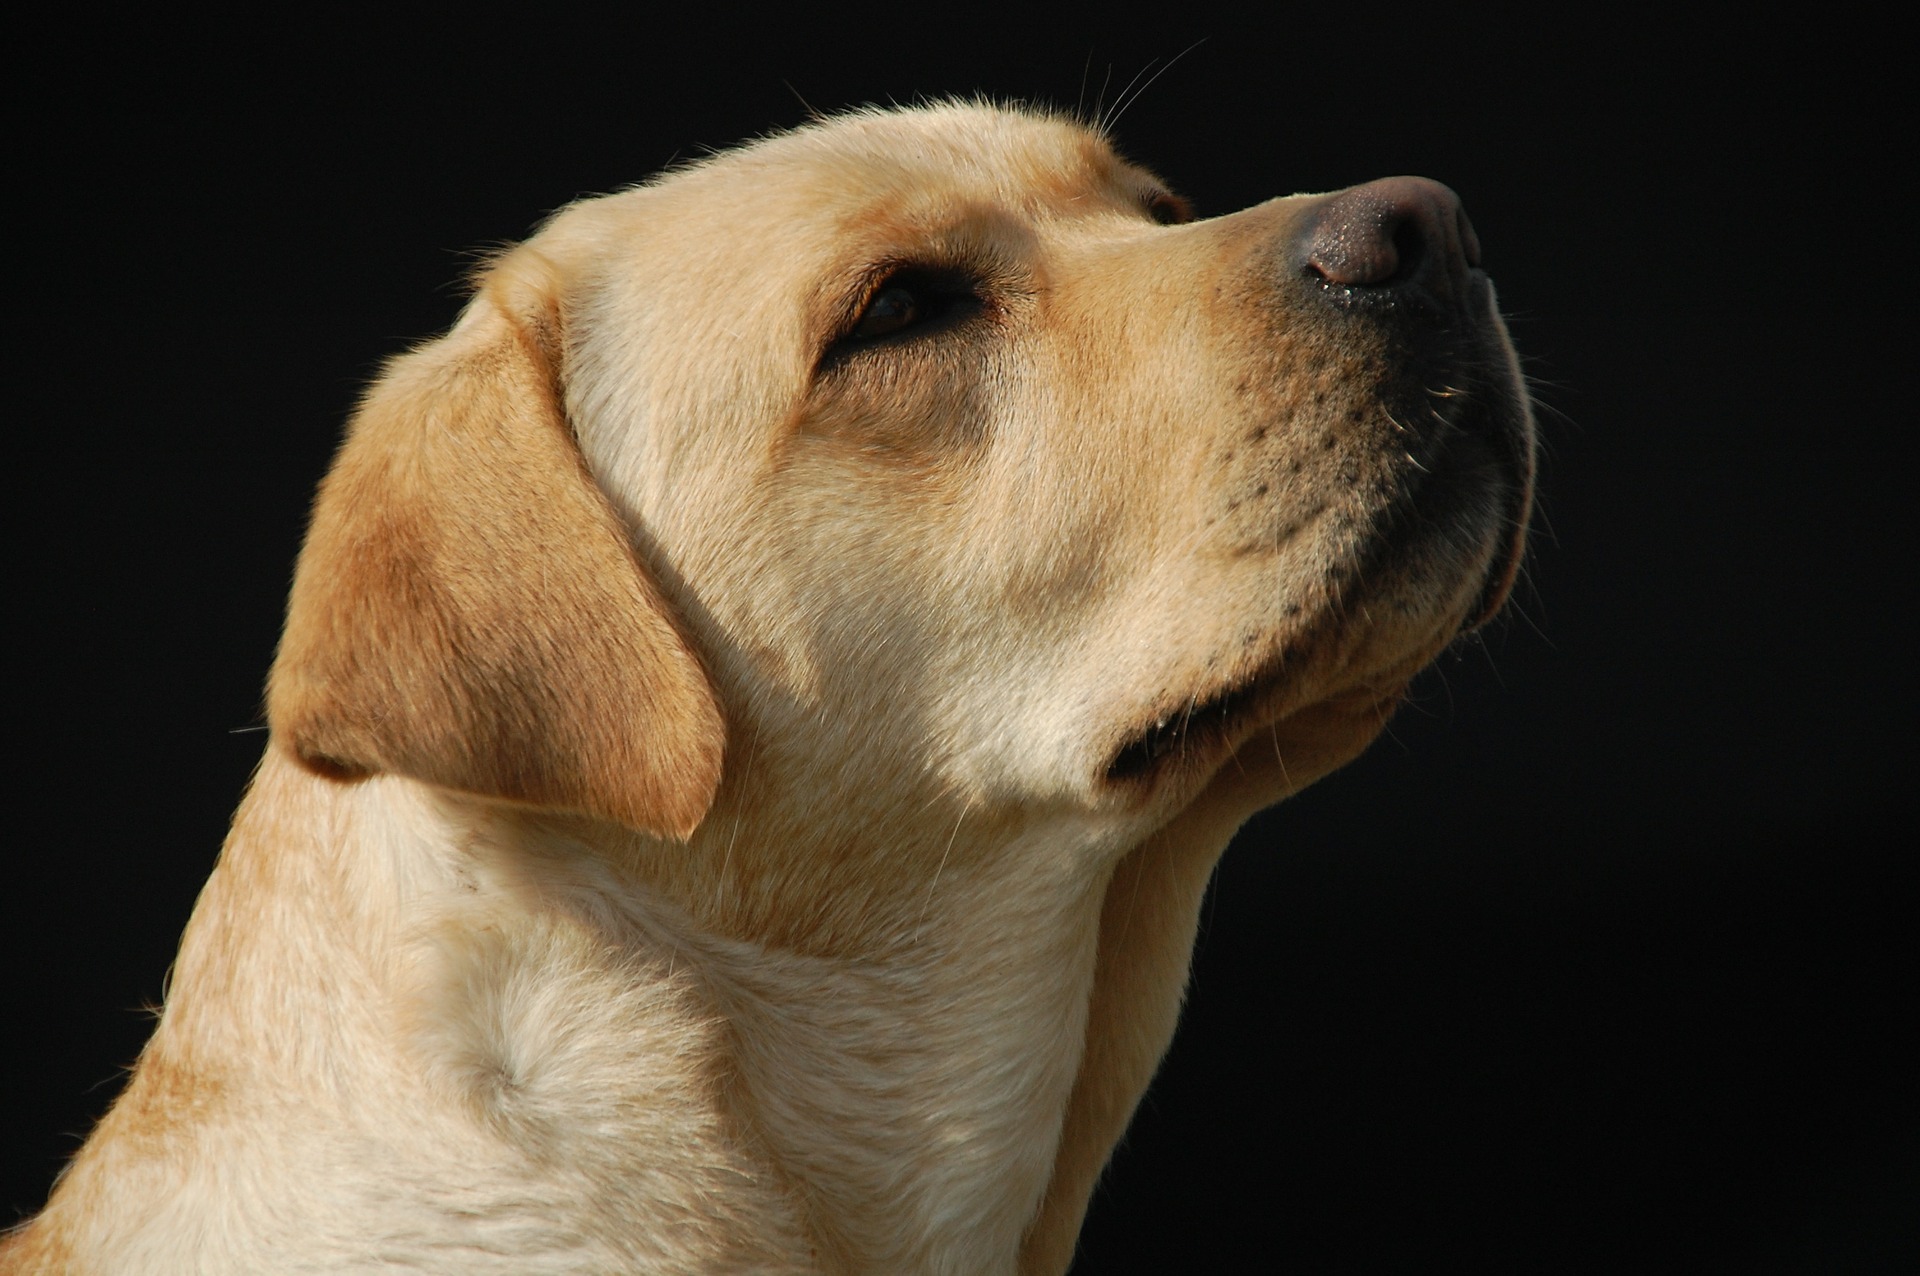 O caso de maus-tratos contra a cachorra chocou moradores da cidade (Foto: Ilustrativa | Pixabay)